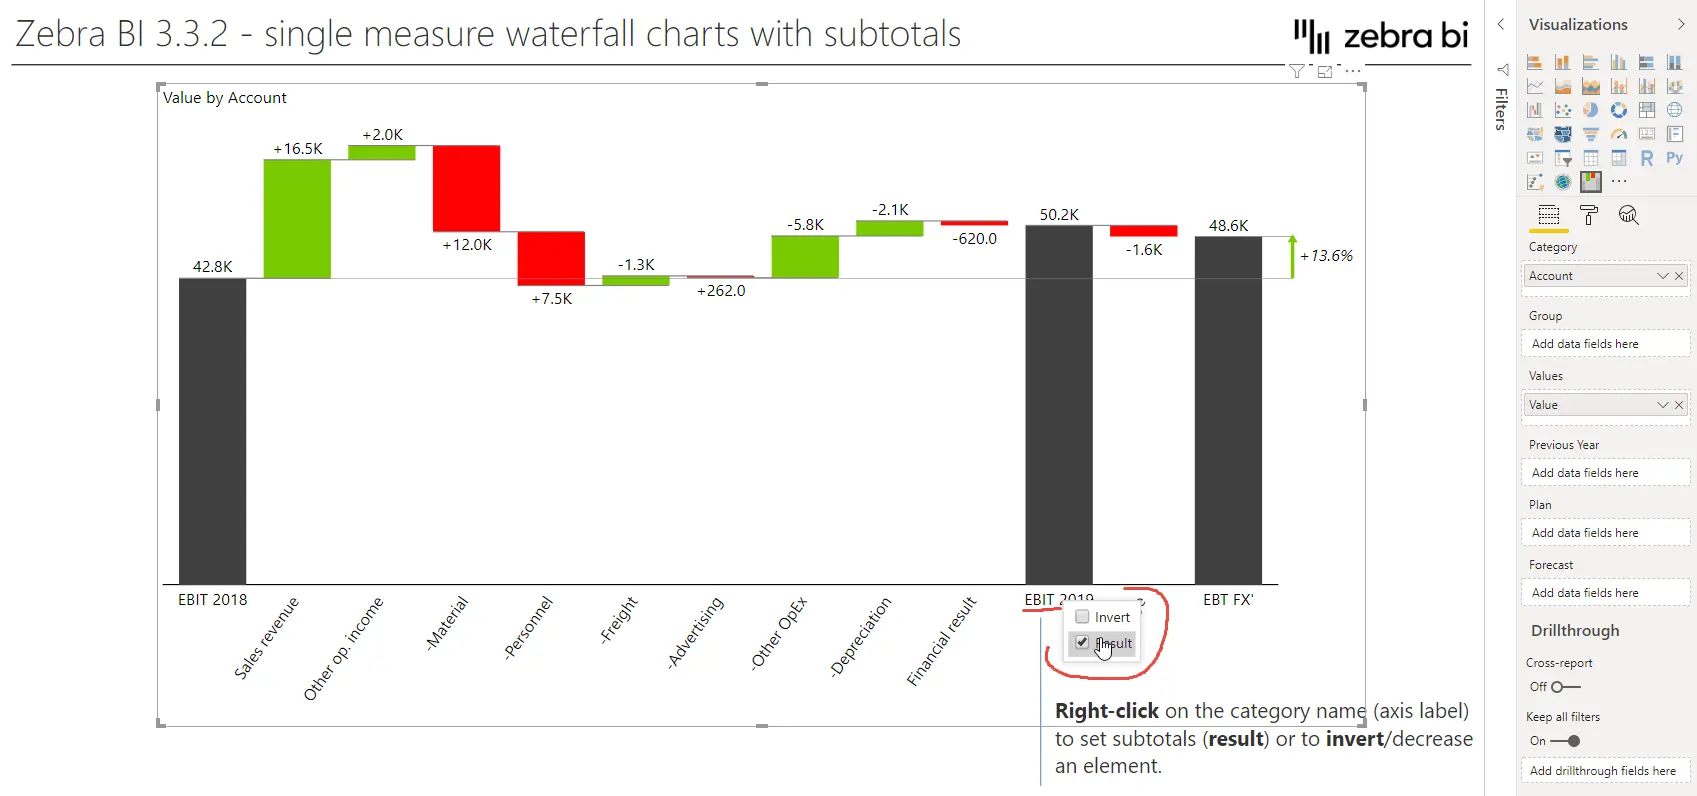 Zebra BI waterfall chart